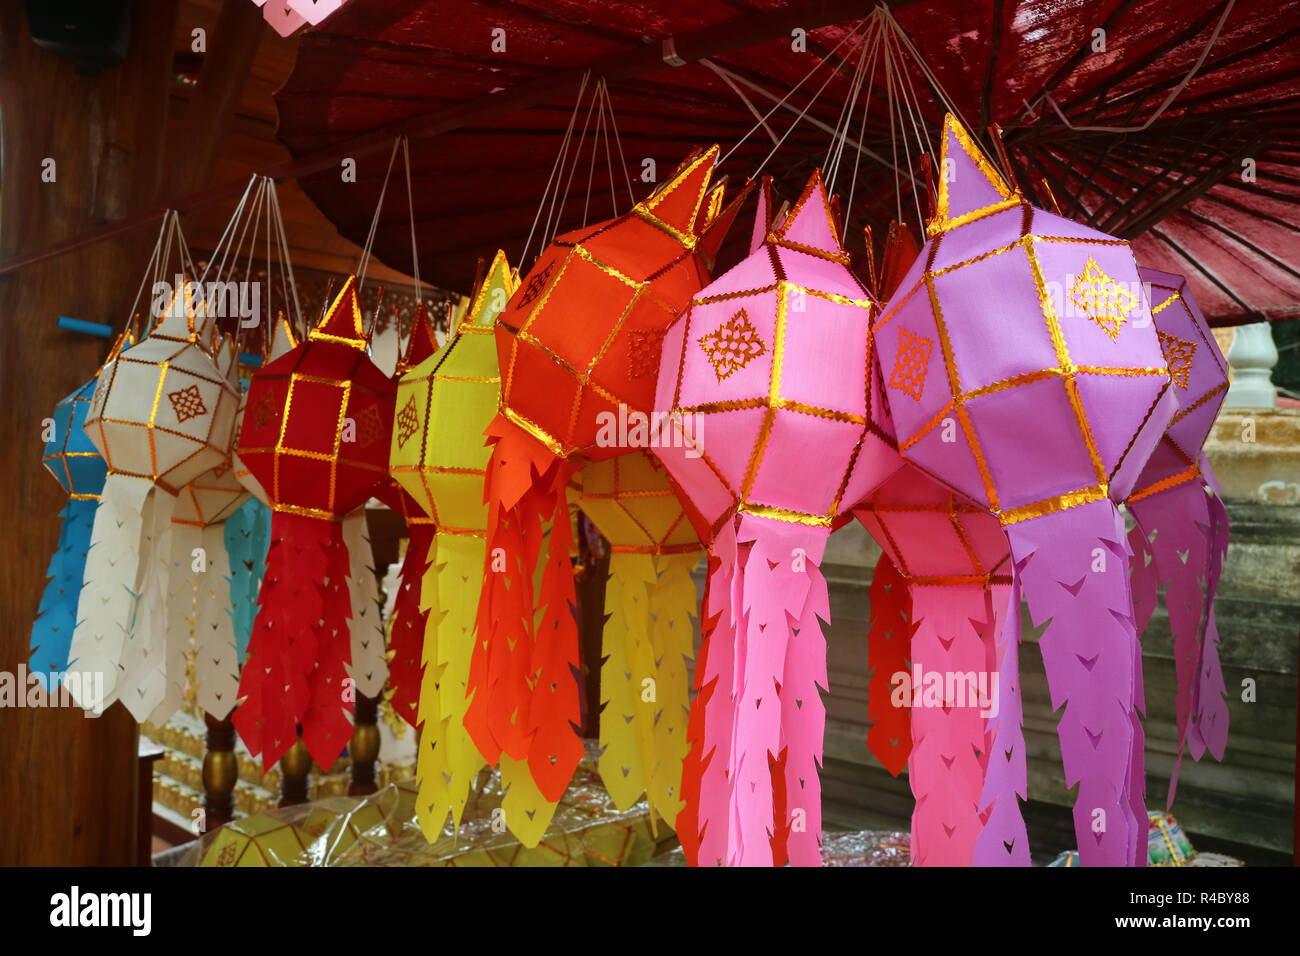 Colorful Paper Lantern or Yee Peng Lantern, Traditional Lantern of Northern Thailand Stock Photo